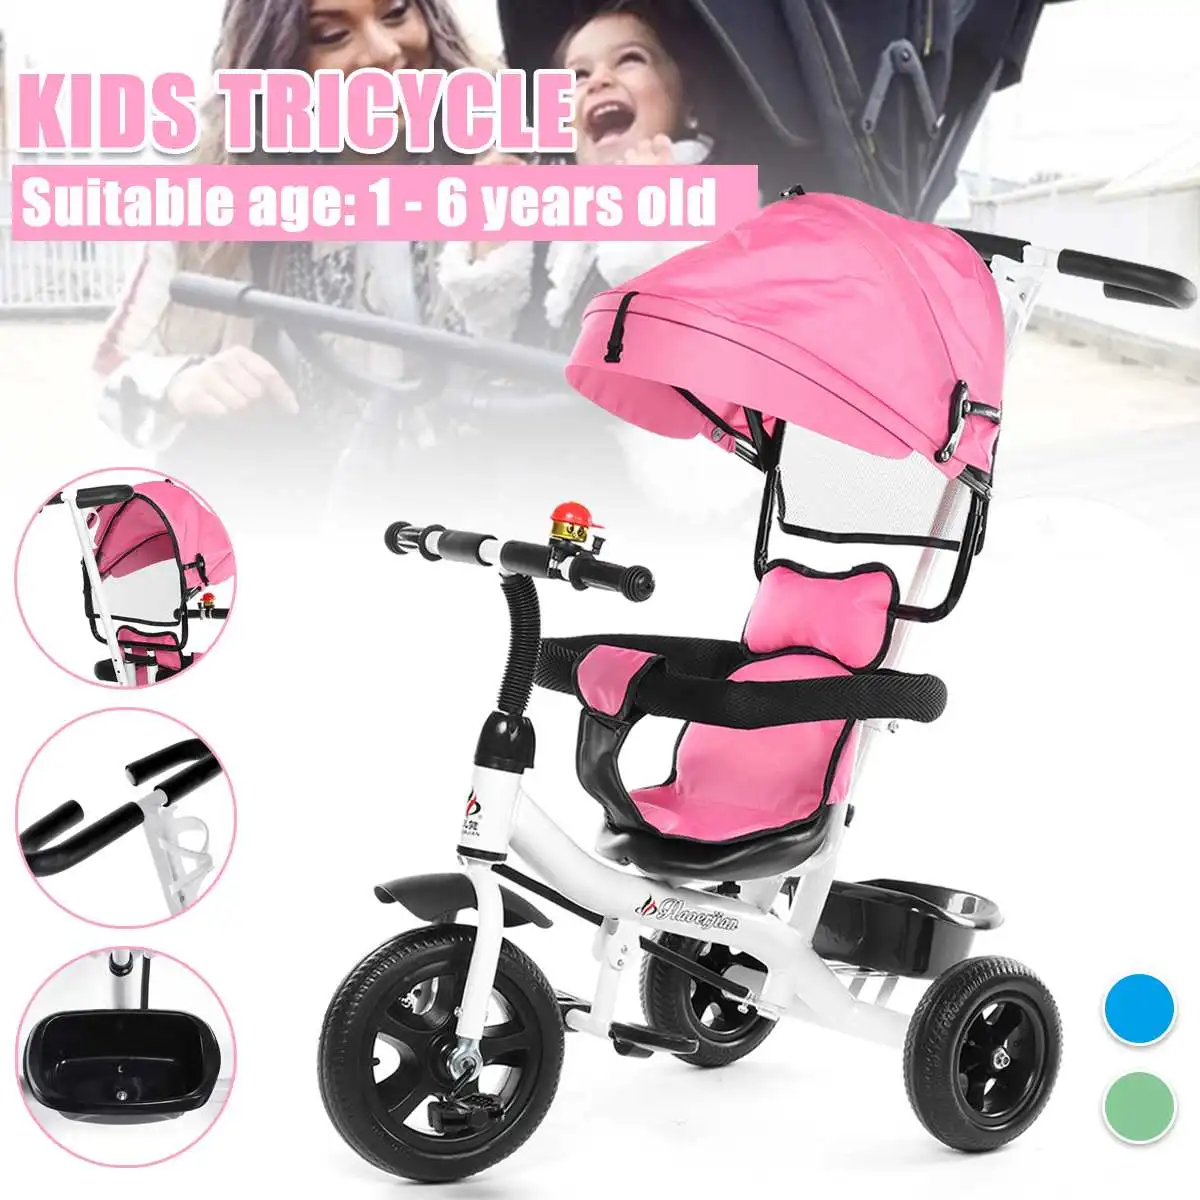 

Детская трехколесная коляска с вращающимся сиденьем, 3 колеса, детский велосипед, трехколесный велосипед, легкая детская коляска, От 1 до 6 ле...